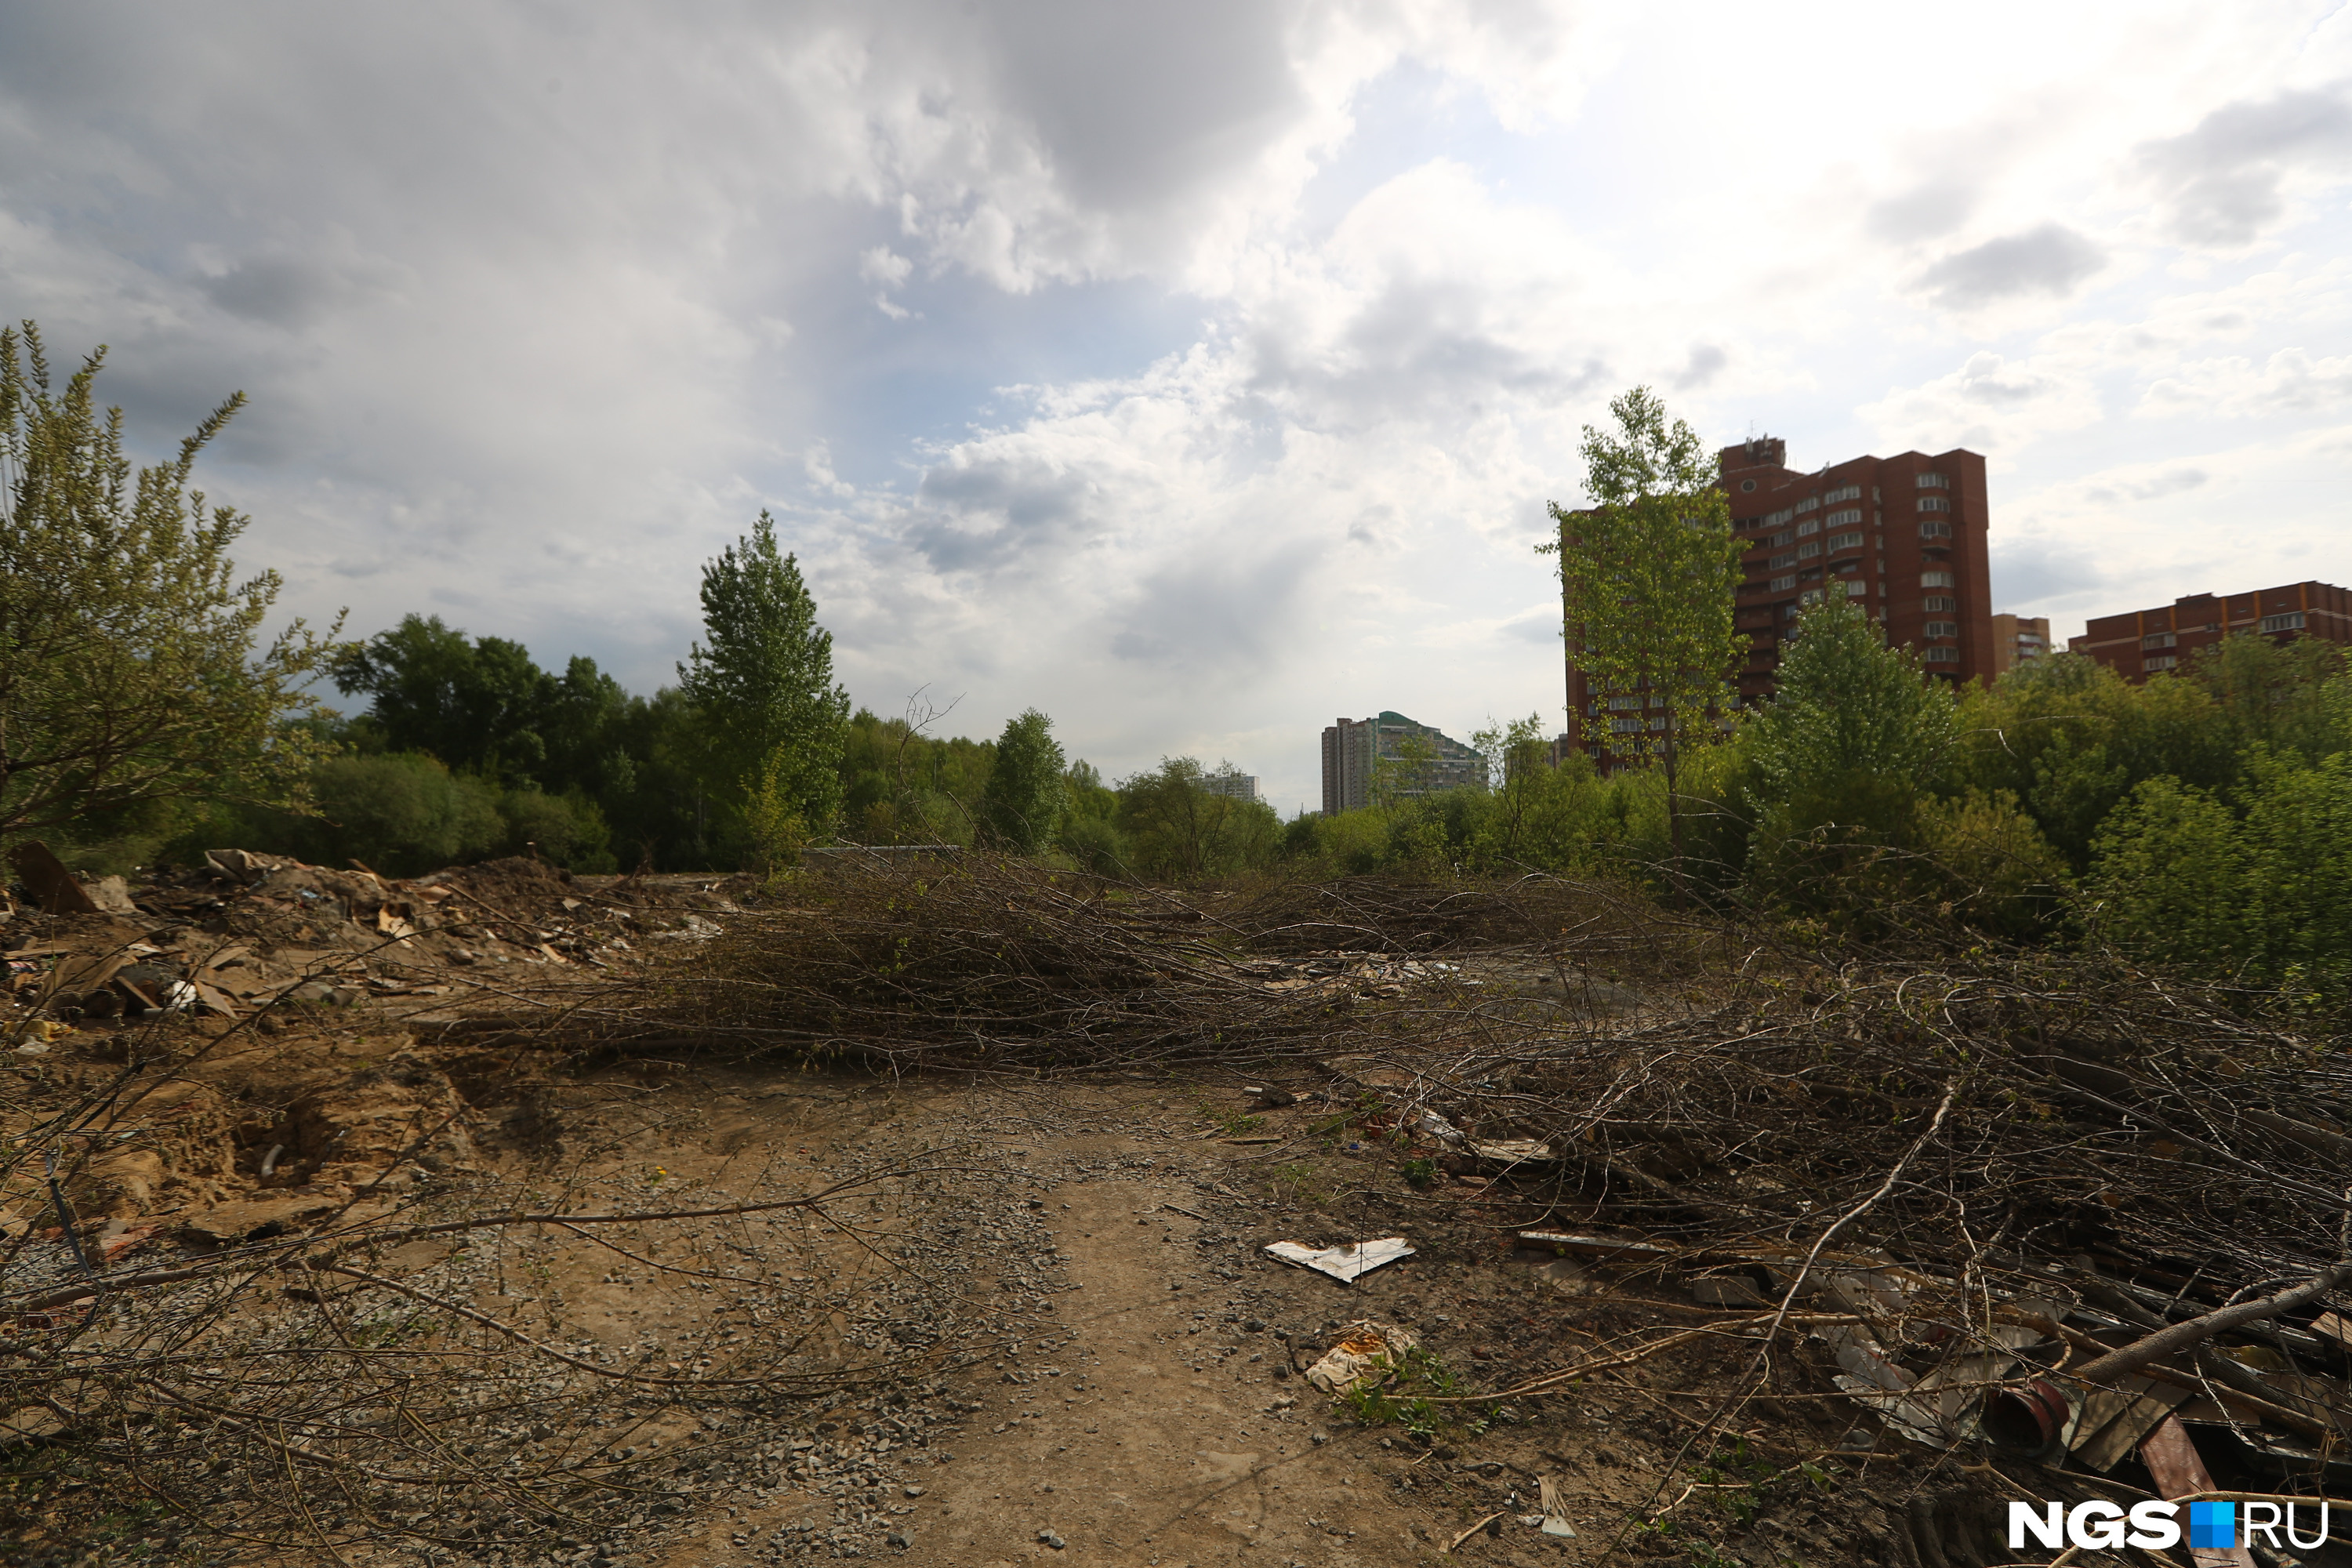 Ранее мэр Анатолий Локоть говорил, что чем активнее горожане голосуют за название для парка, тем больше у Новосибирска шансов получить федеральные деньги на озеленение города